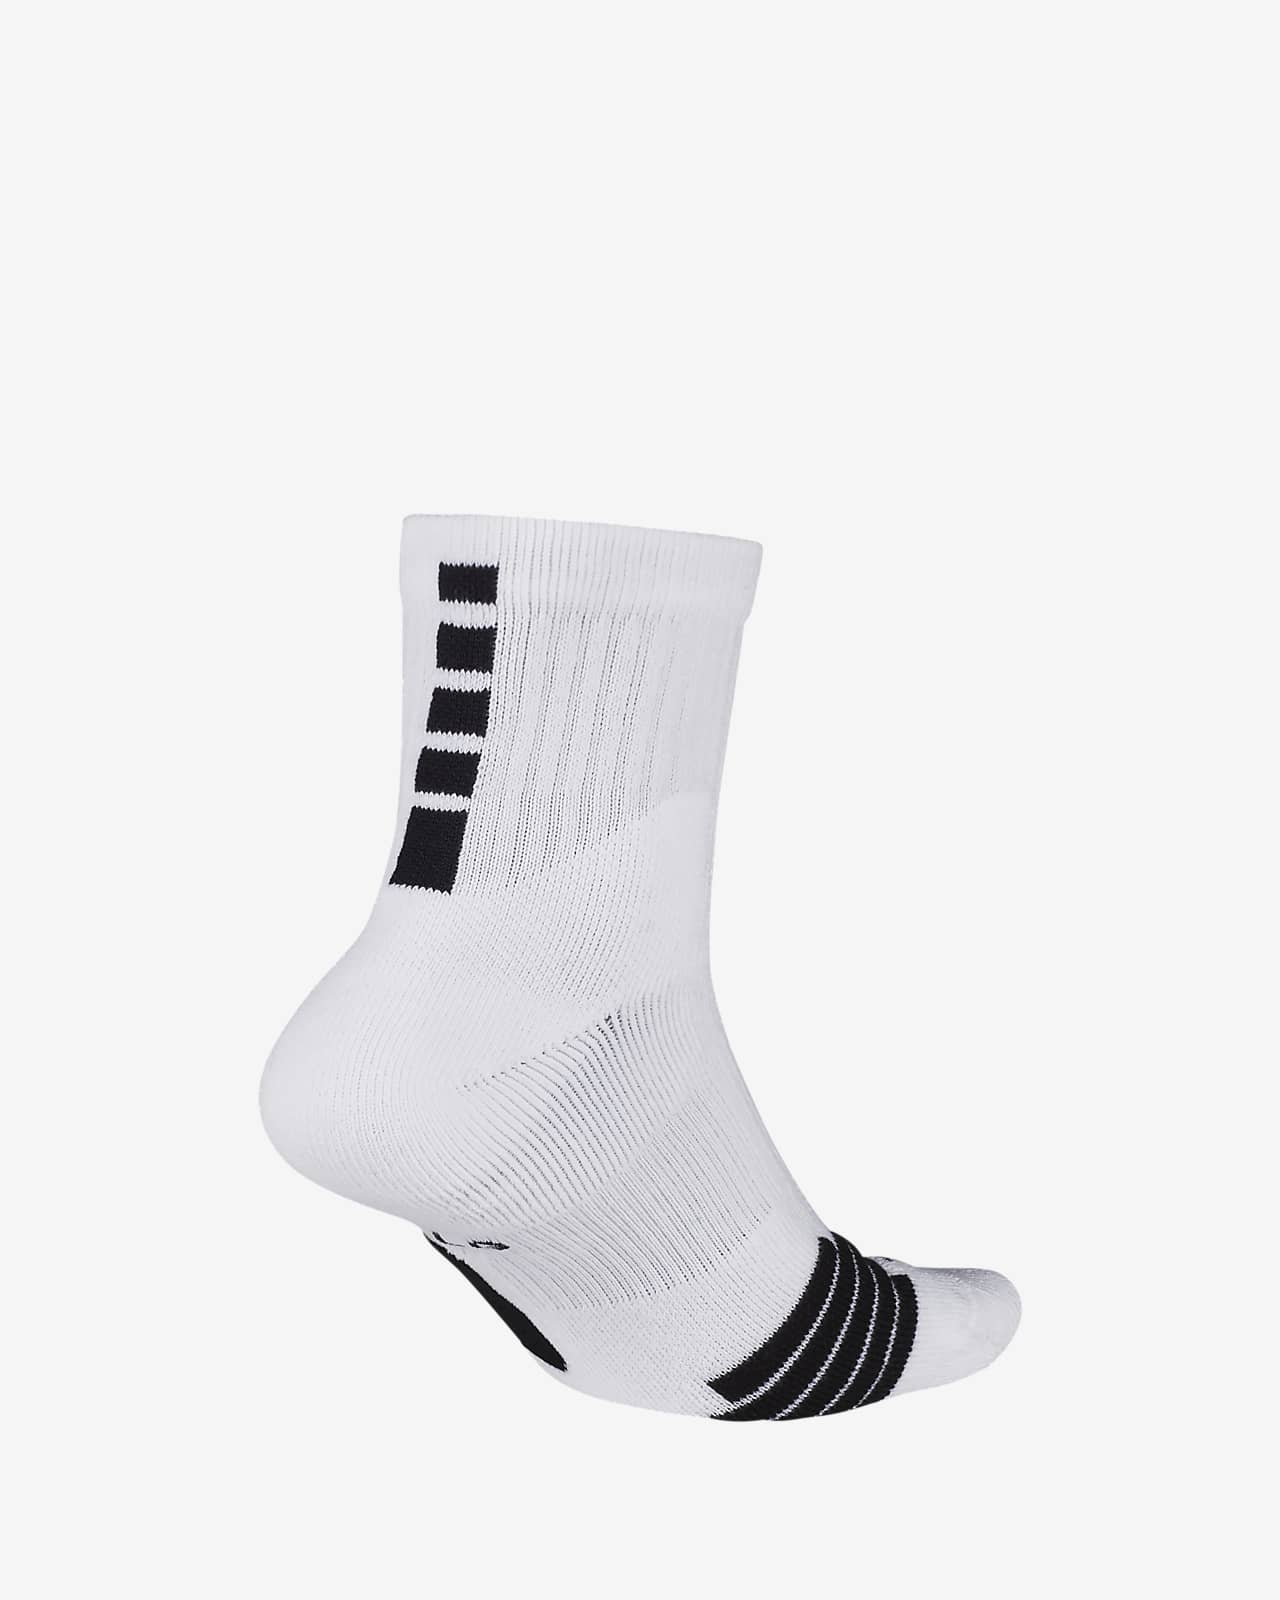 nike elite mid socks